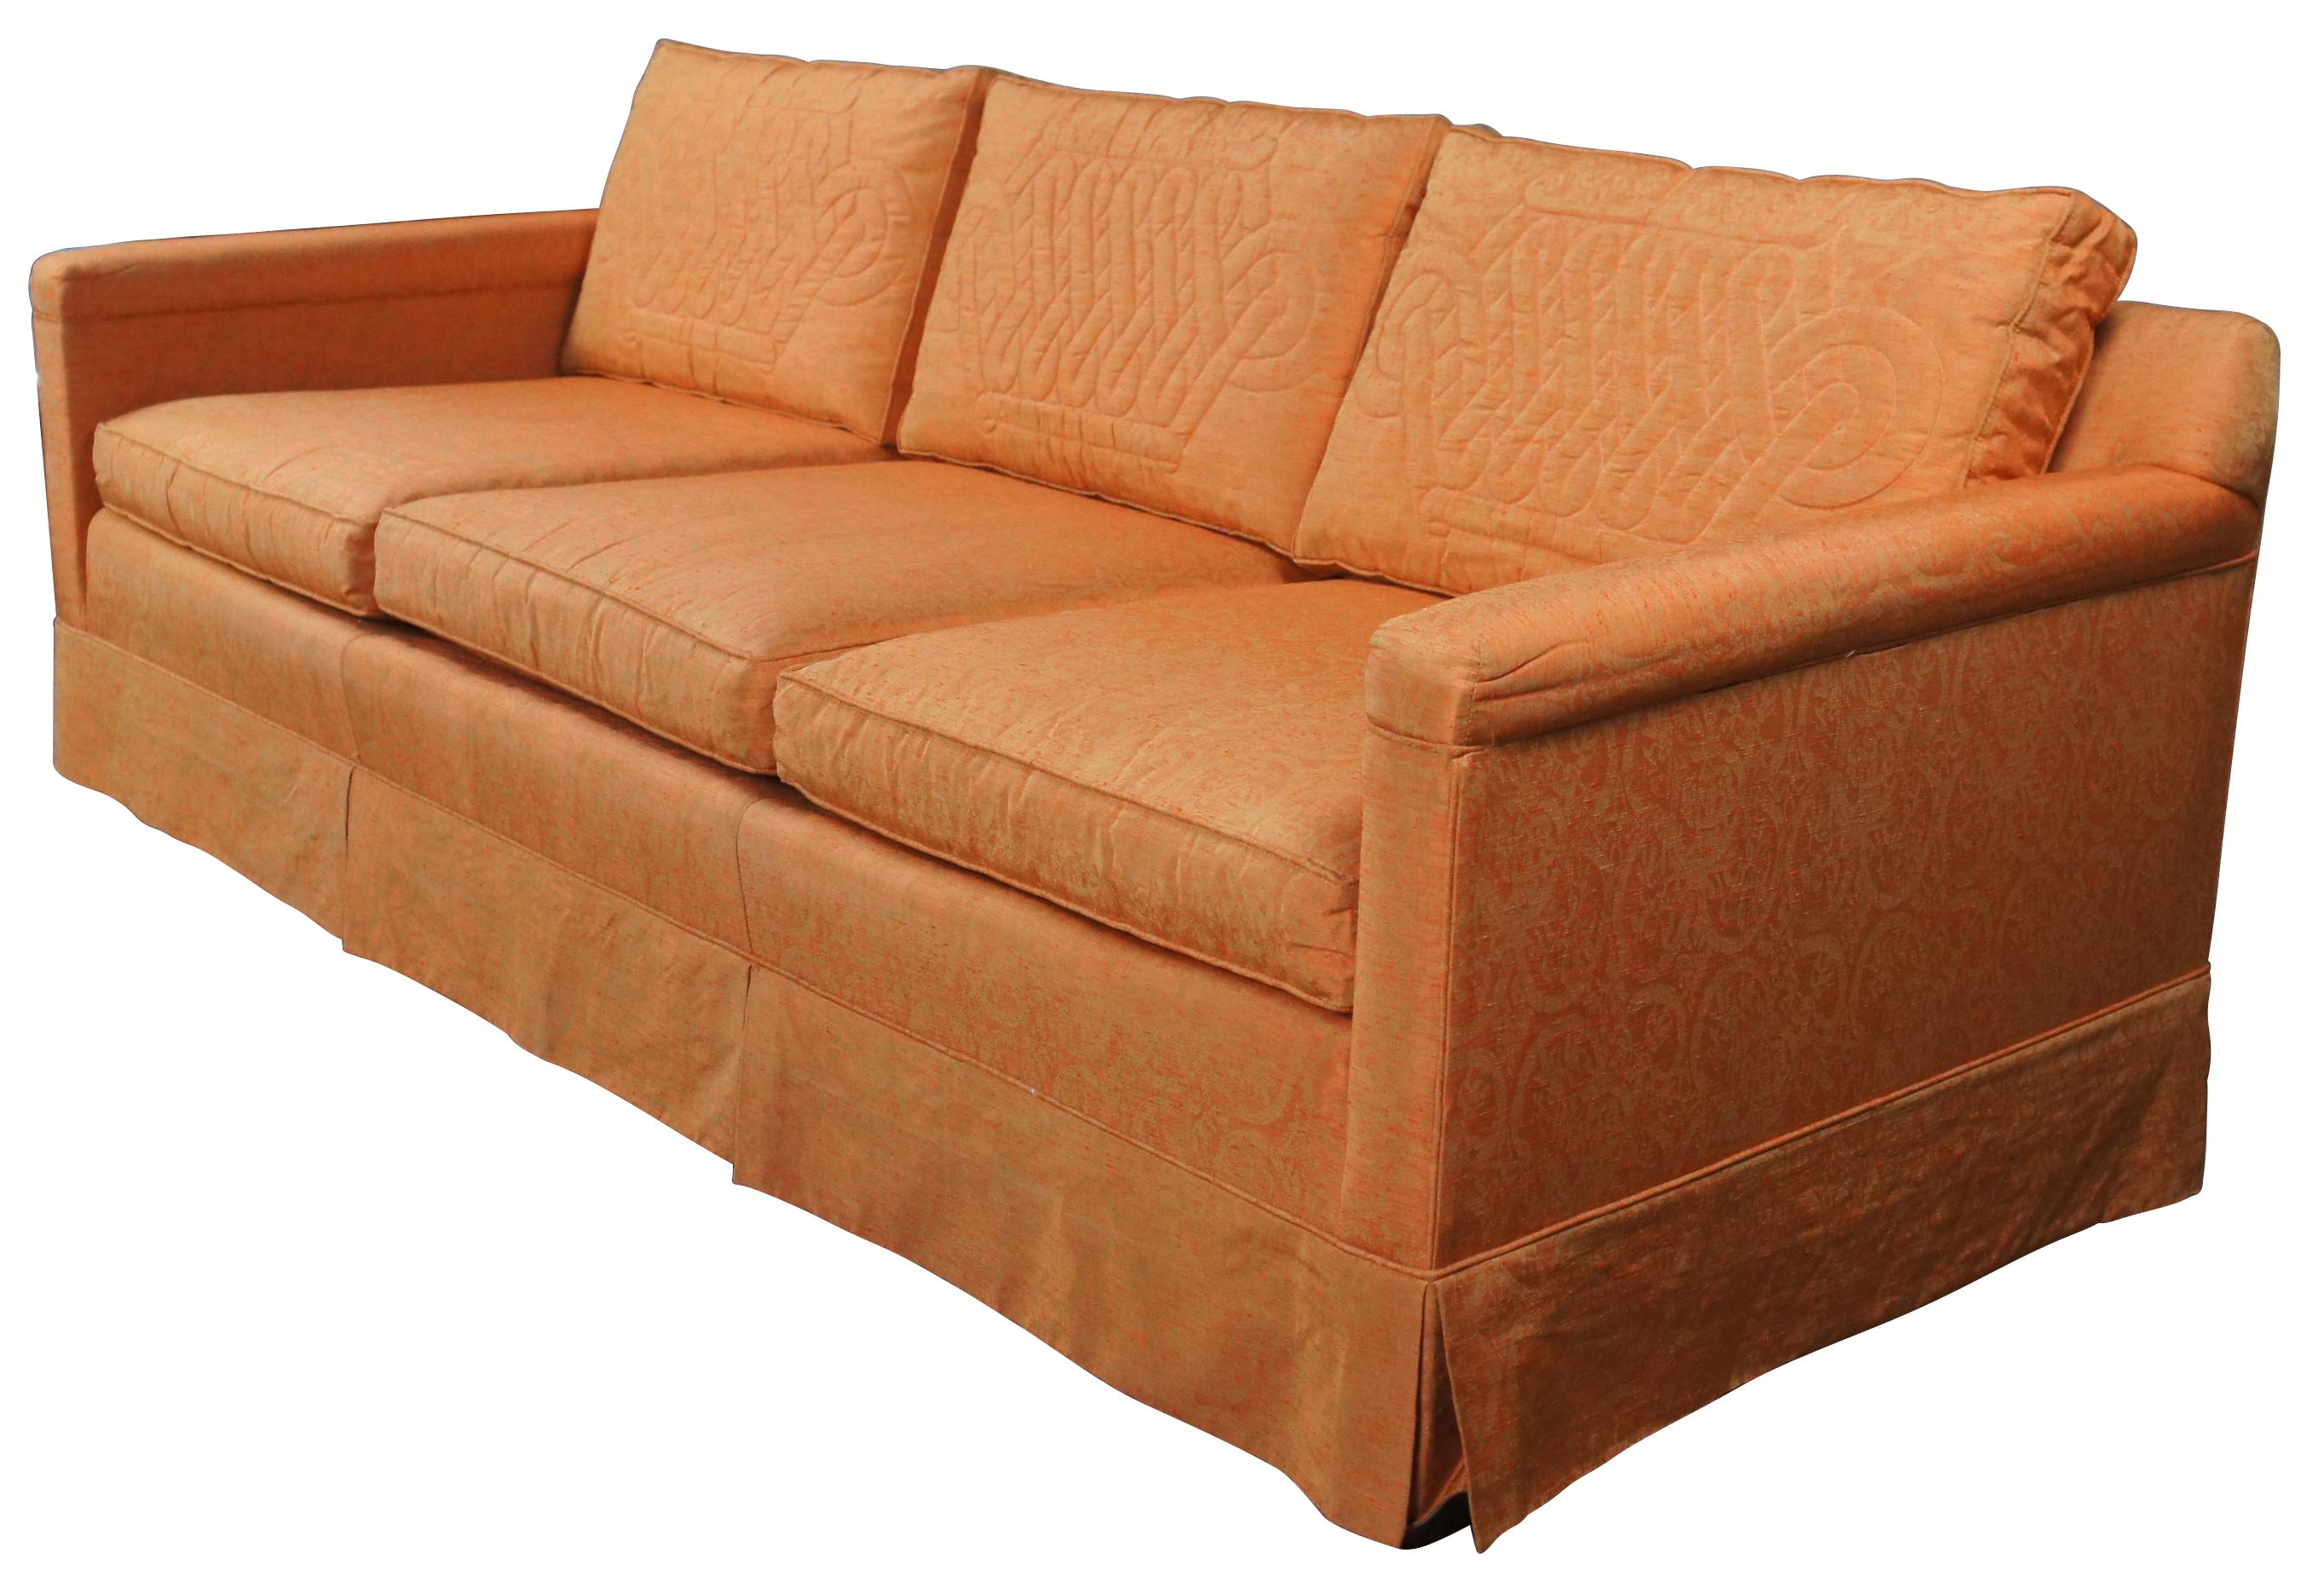 Canapé 3 places du milieu du siècle par Globe Furniture, c.1962.  Il présente une forme rectangulaire tapissée d'un tissu damassé orange avec des coussins matelassés à médaillon à l'arrière.  Le canapé est soutenu par des pieds carrés effilés avec